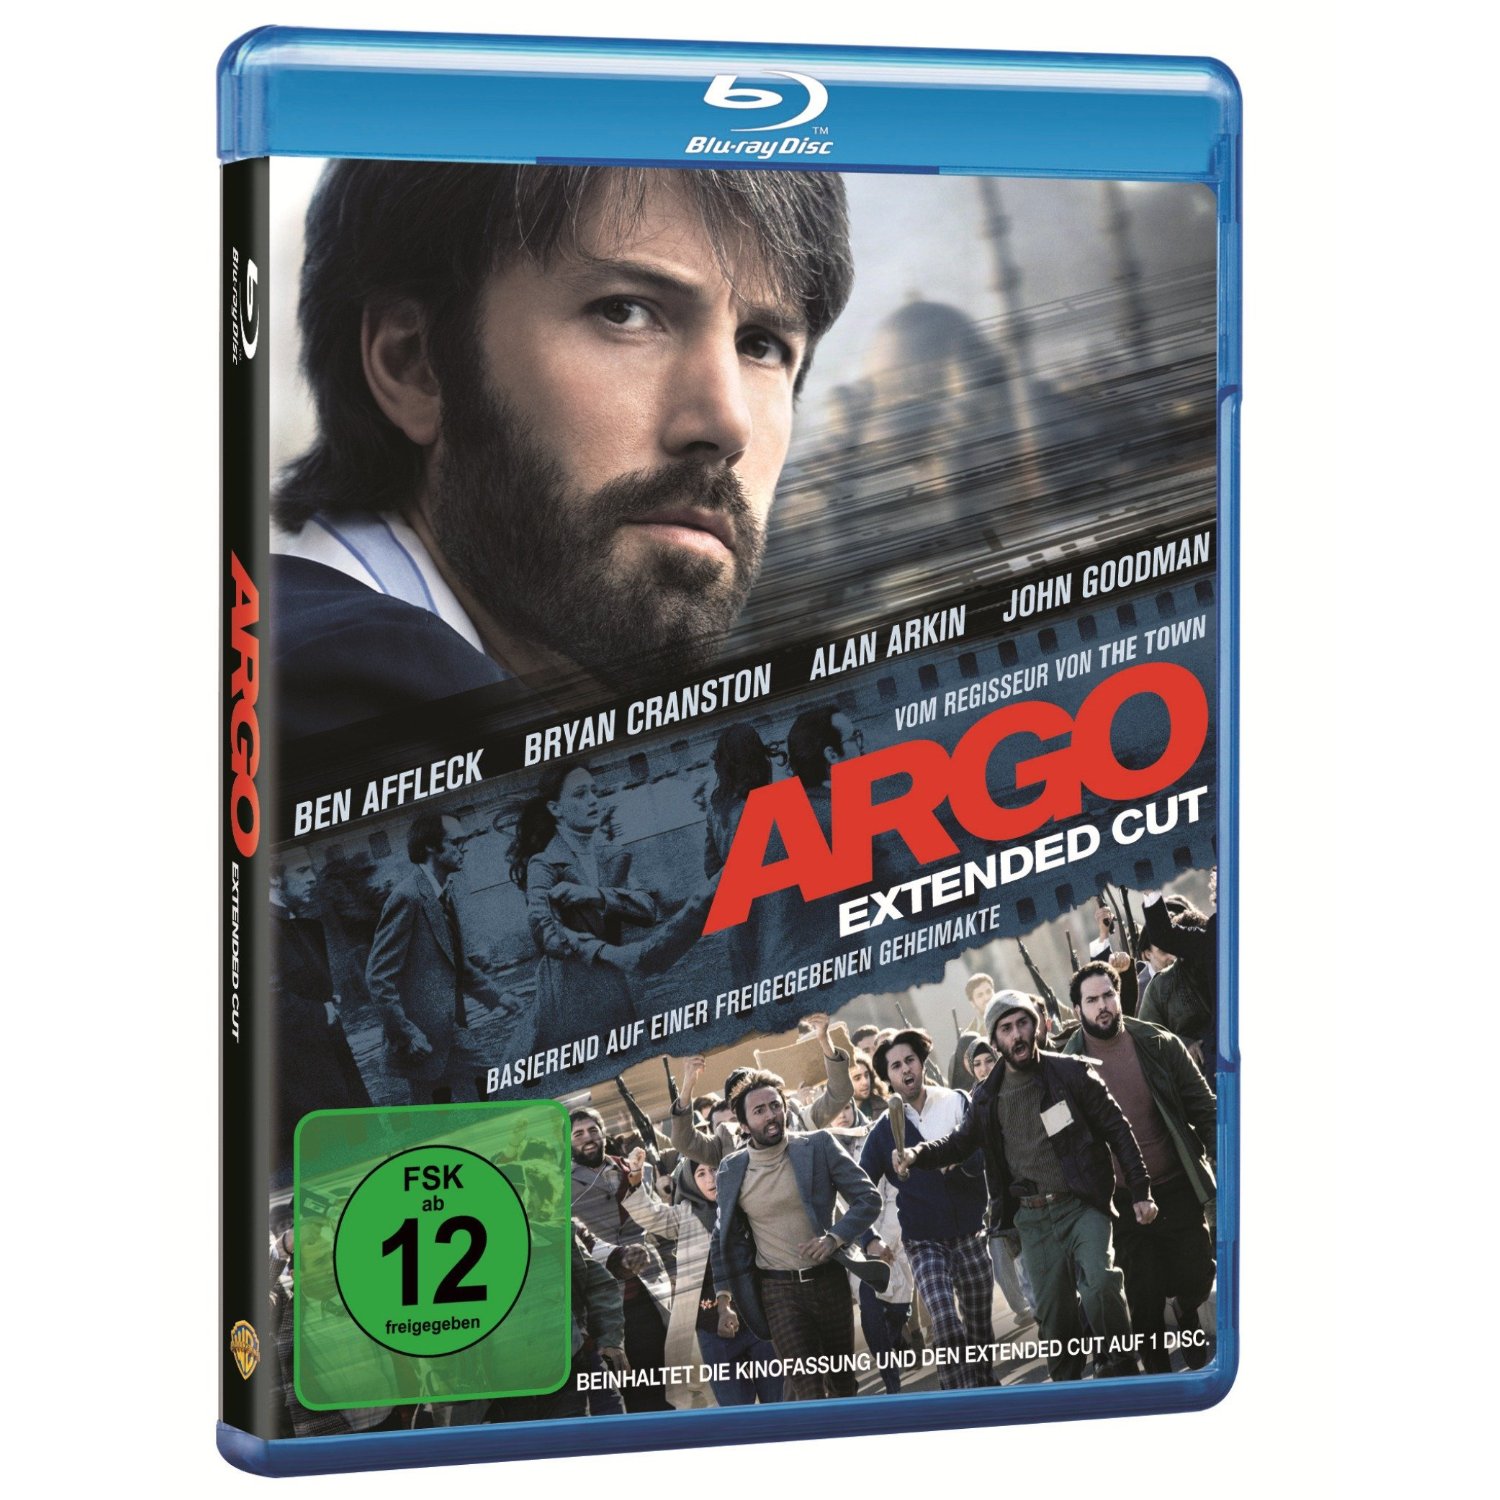 [AMAZON] Oscarschleuder! Argo – Extended Cut [Blu-ray] für nur 9,97 Euro inkl. Versand